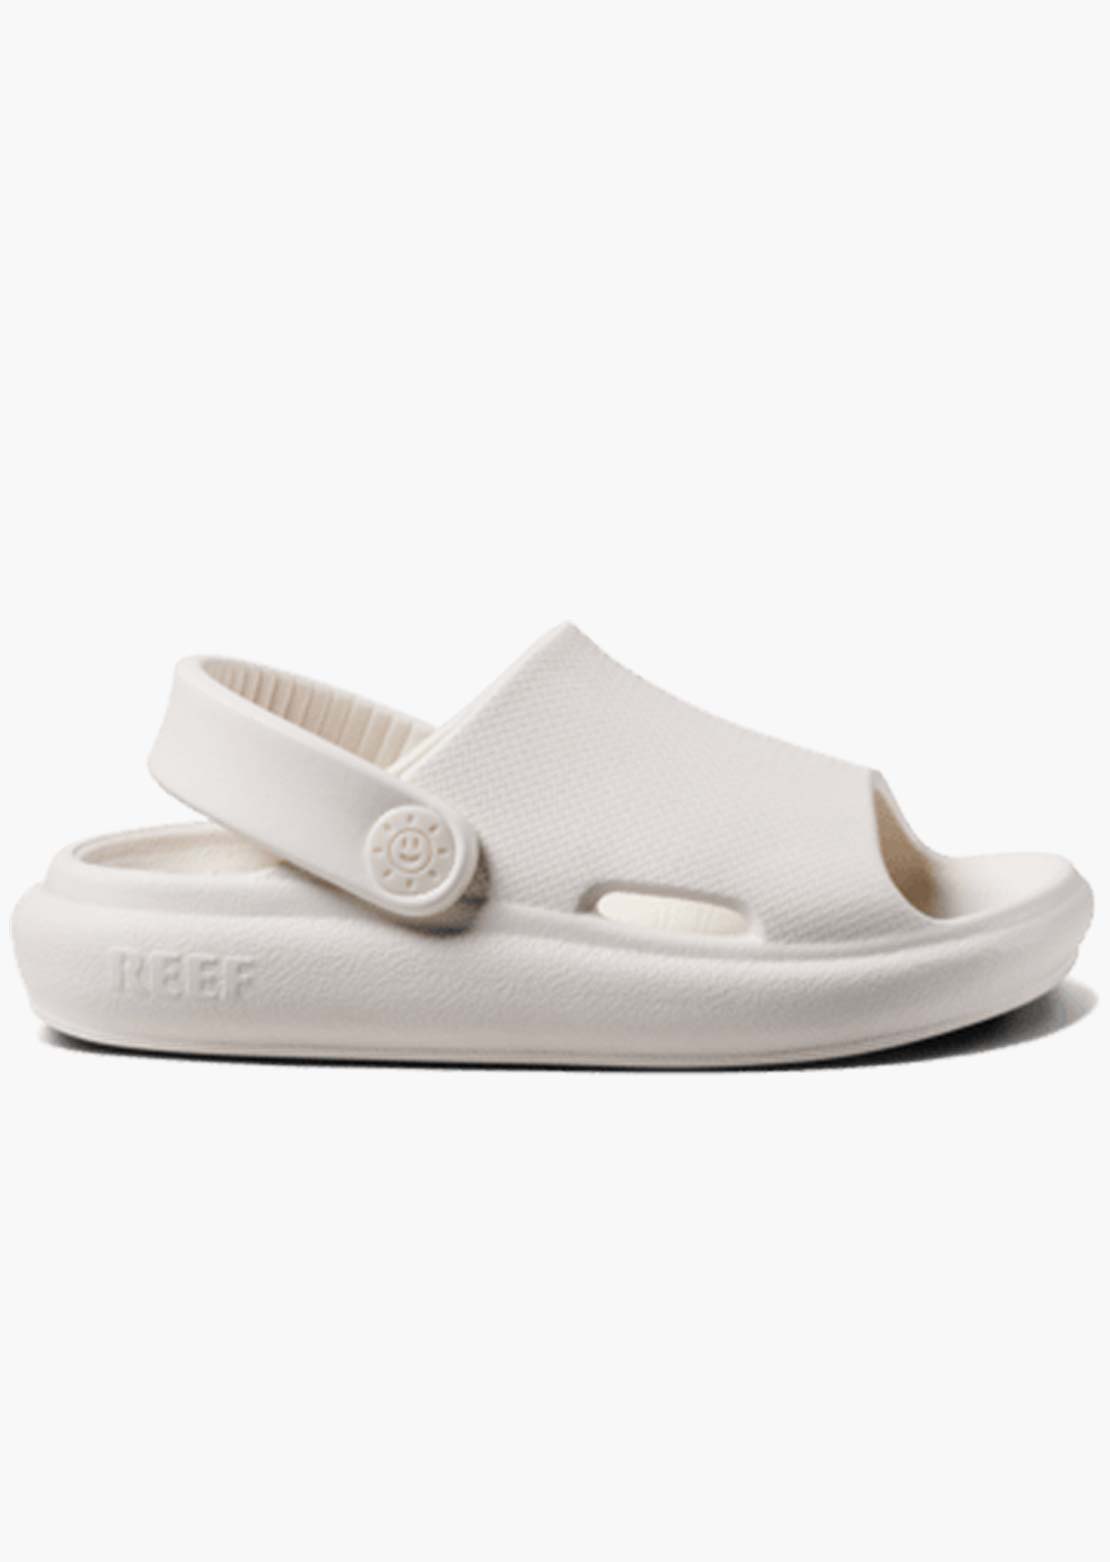 Reef Toddler Little Rio Slide Sandals Whisper White